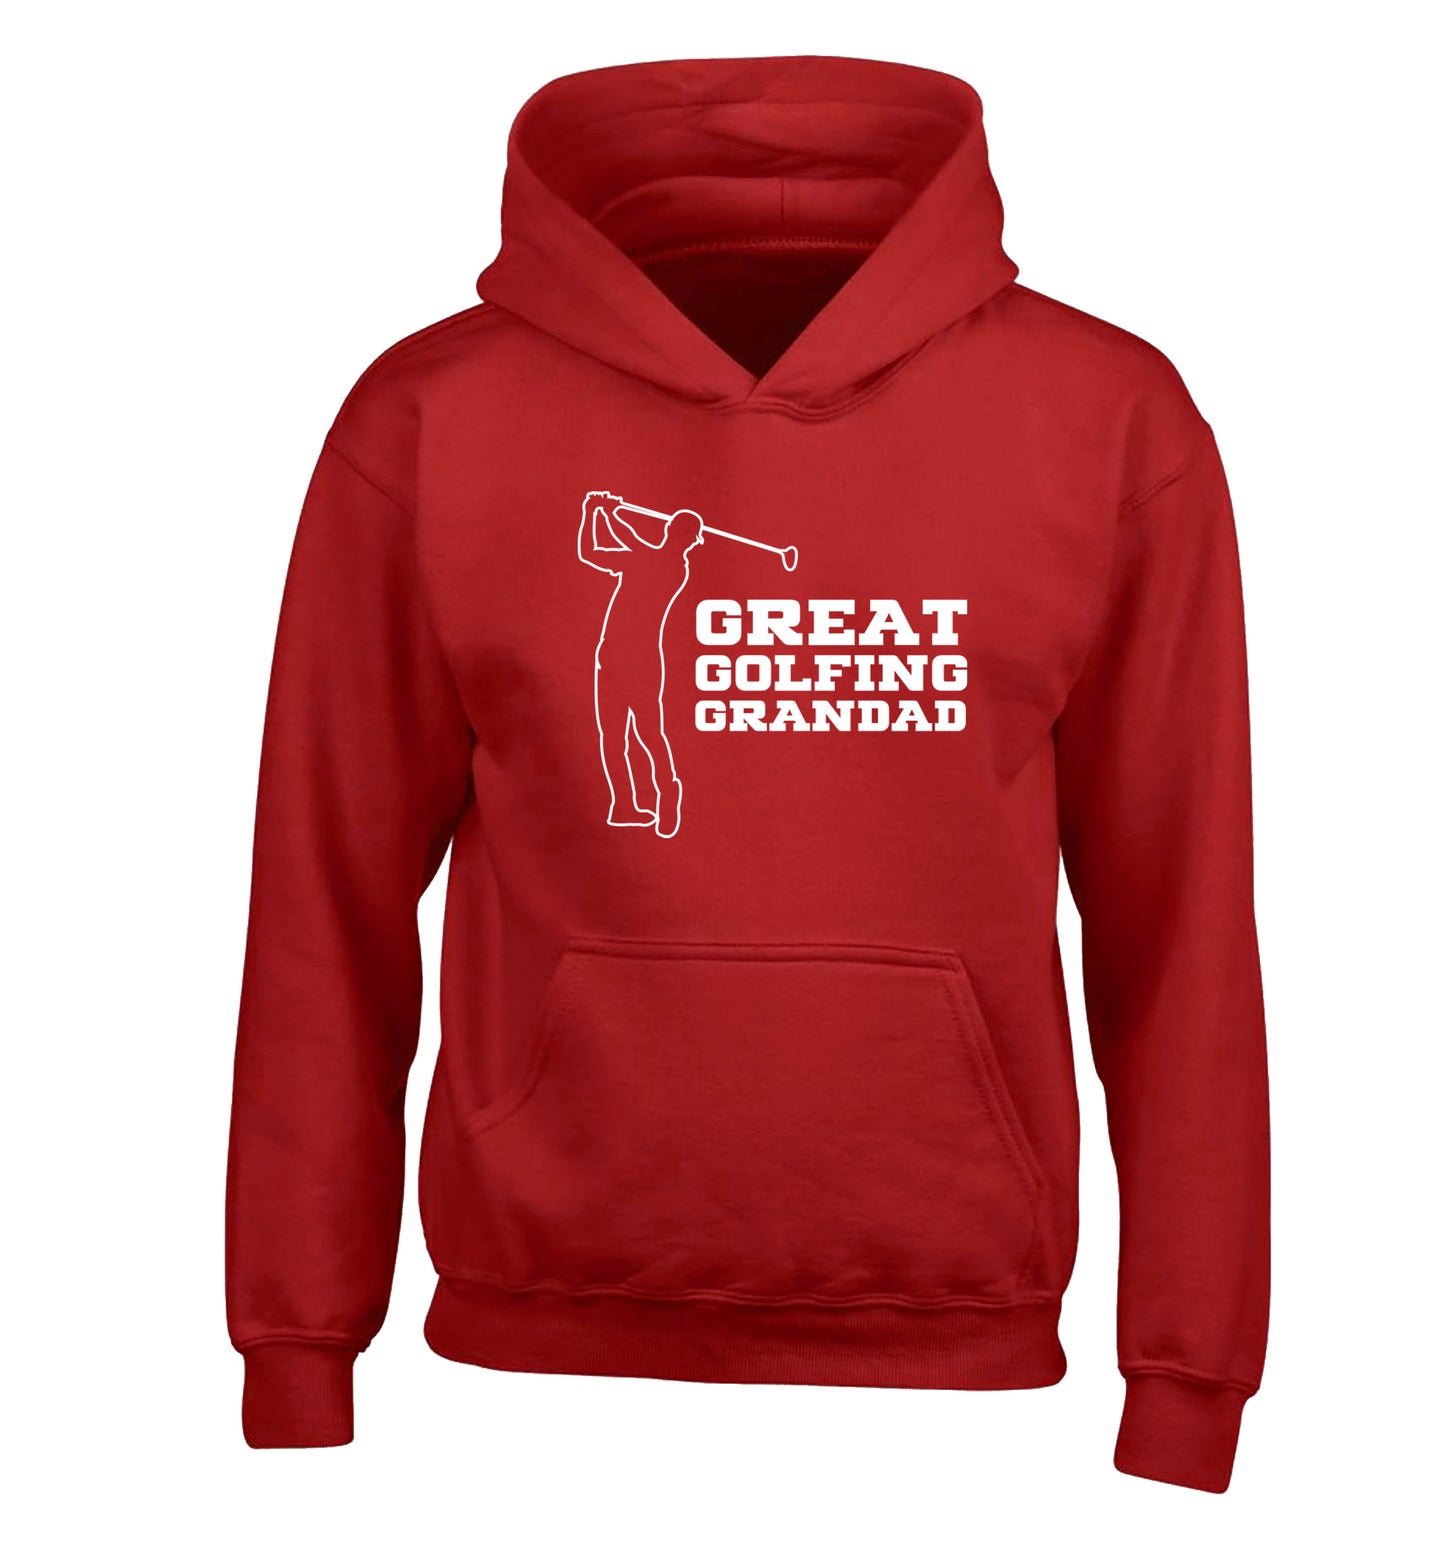 Great Golfing Grandad children's red hoodie 12-13 Years